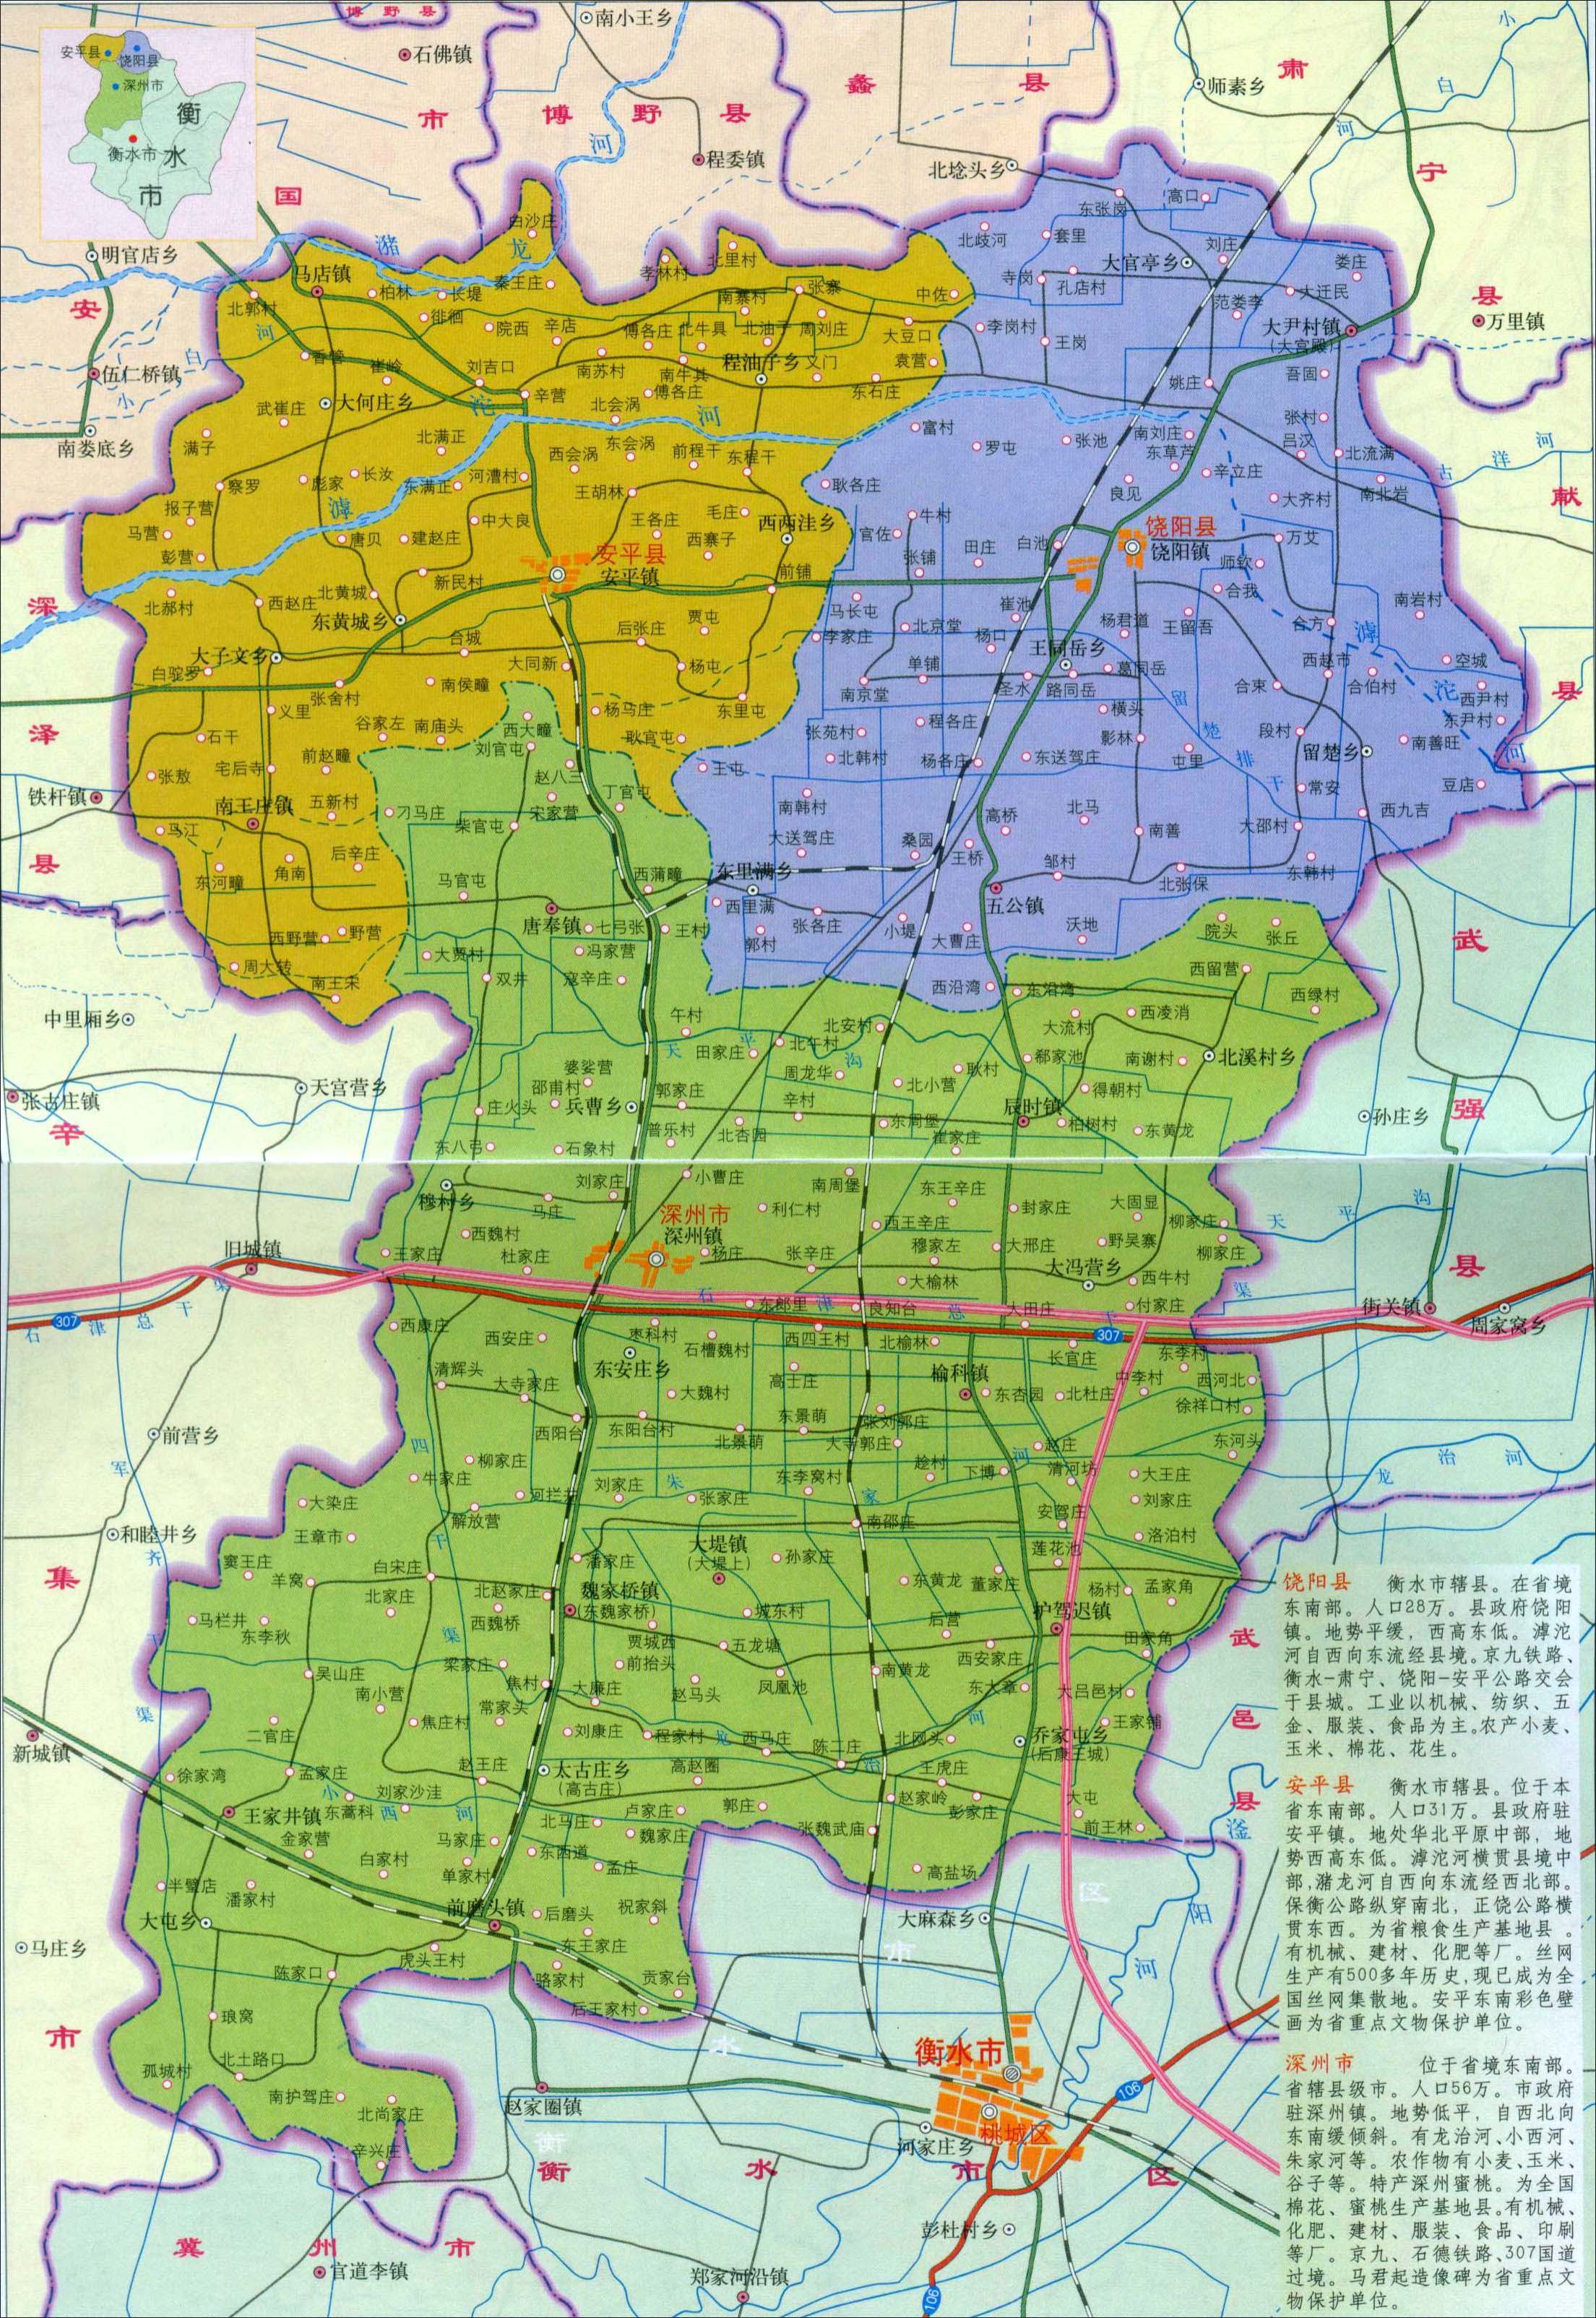 邯郸市 上一幅地图: 深州市地图 | 衡水市 | 下一幅地图: 饶阳县地图